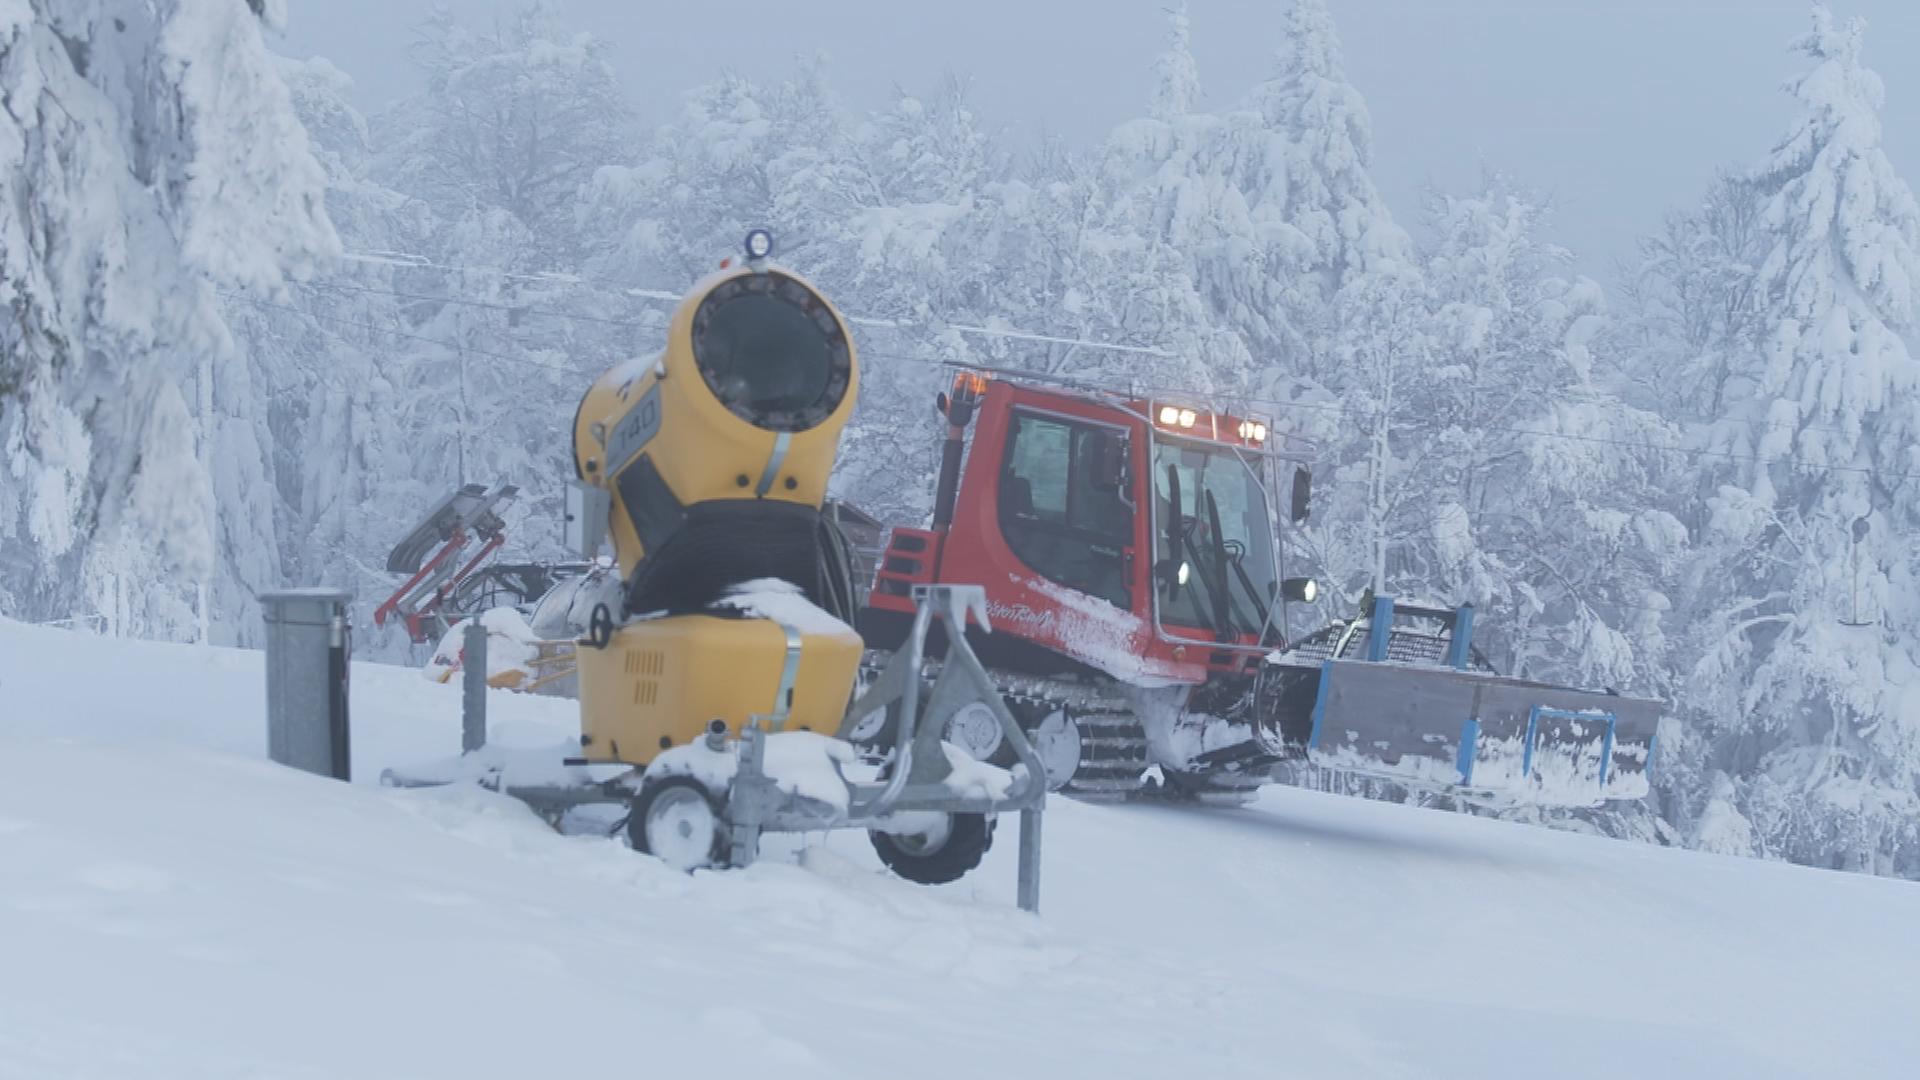 Eine Schneekanone und ein Schneeschieber im verschneiten Ski-Gebiet 